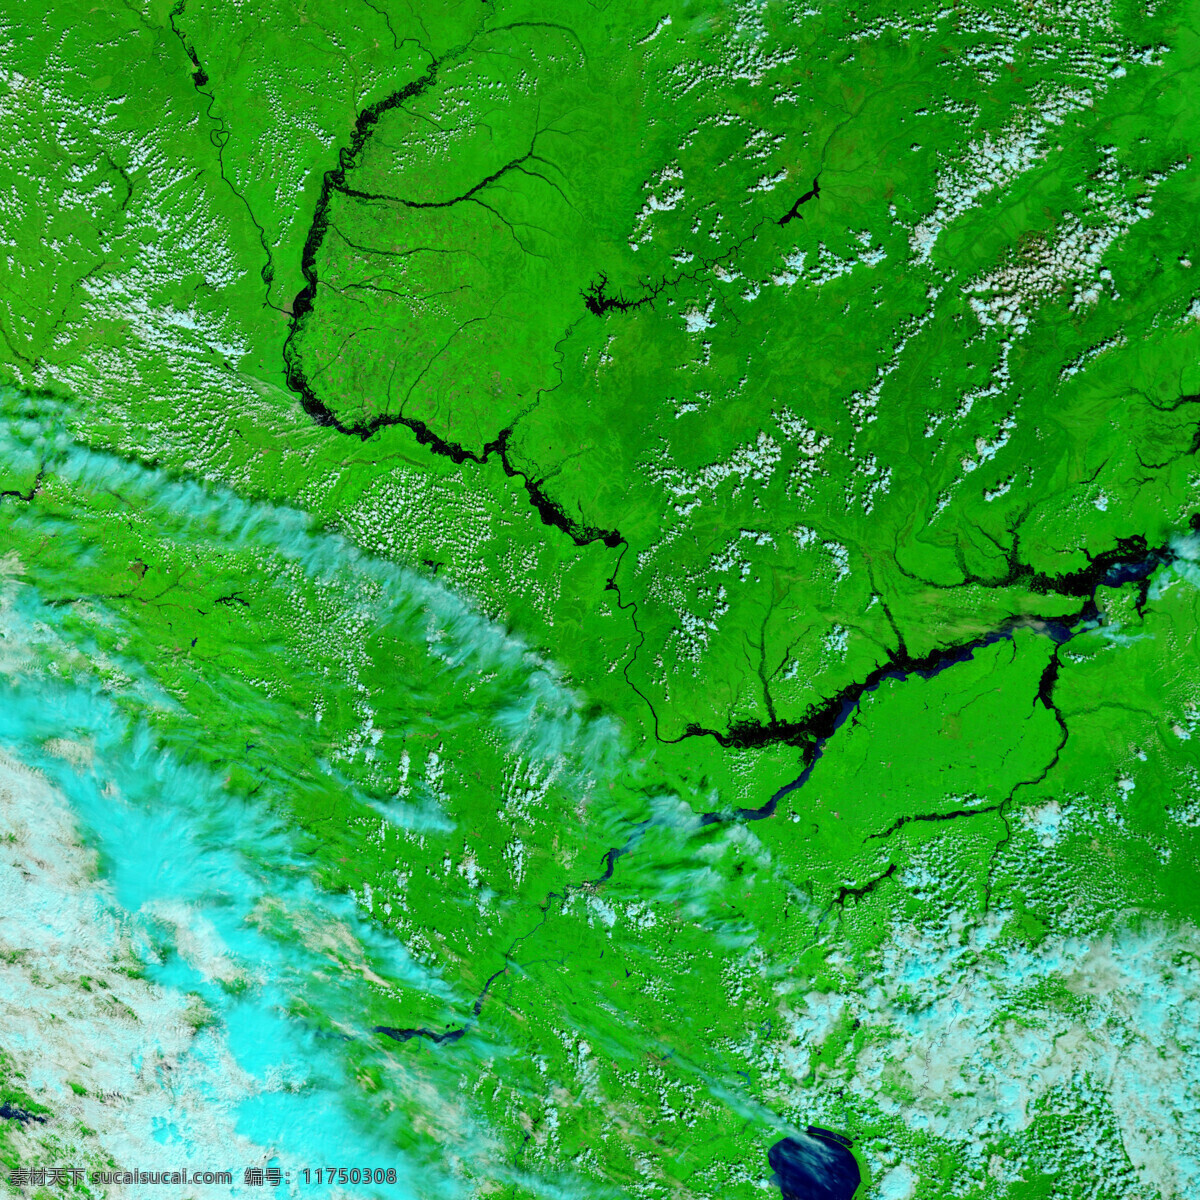 俄罗斯洪水 nasa 美国太空总署 地图 地理 卫星照片 卫星拍摄 卫星地图 遥感 卫星影像 三维地图 卫星云图 谷歌地图 俄罗斯 洪水 自然景观